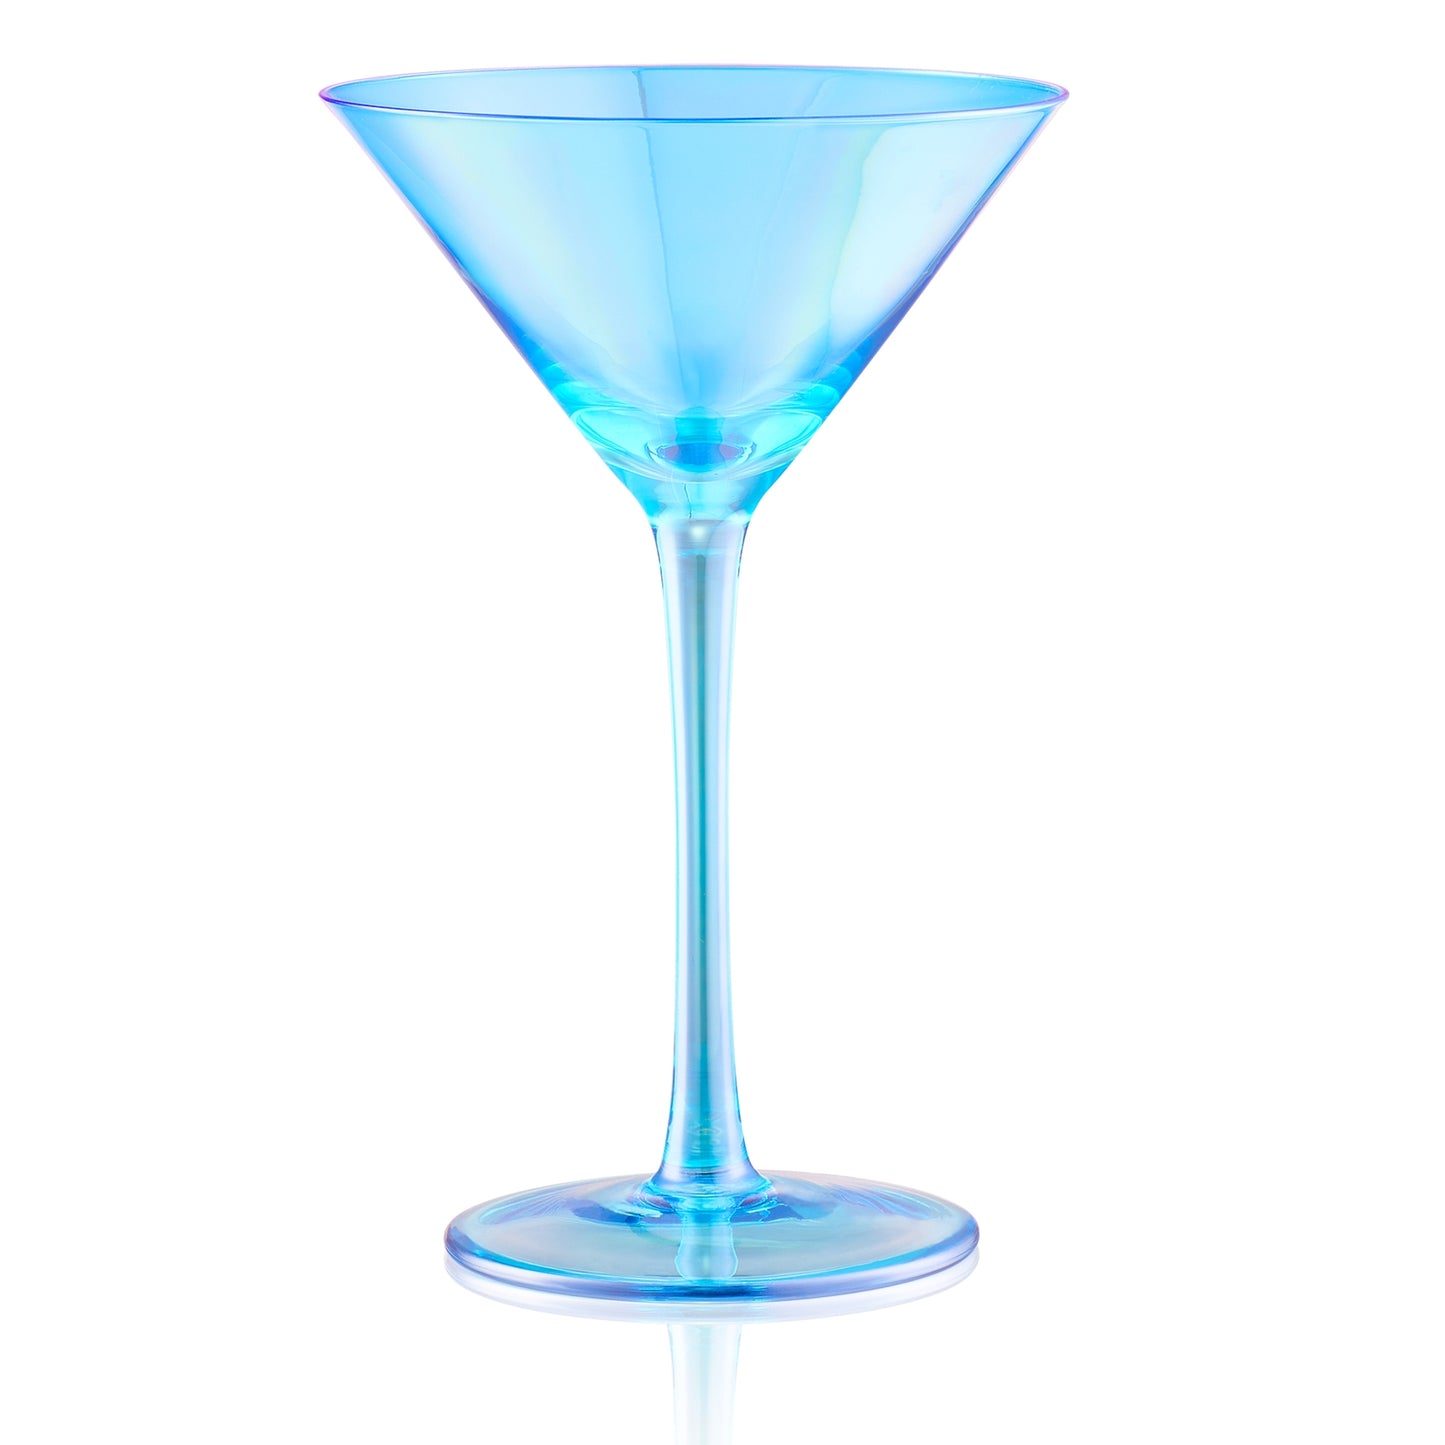 Transparent Blue Martini Glass